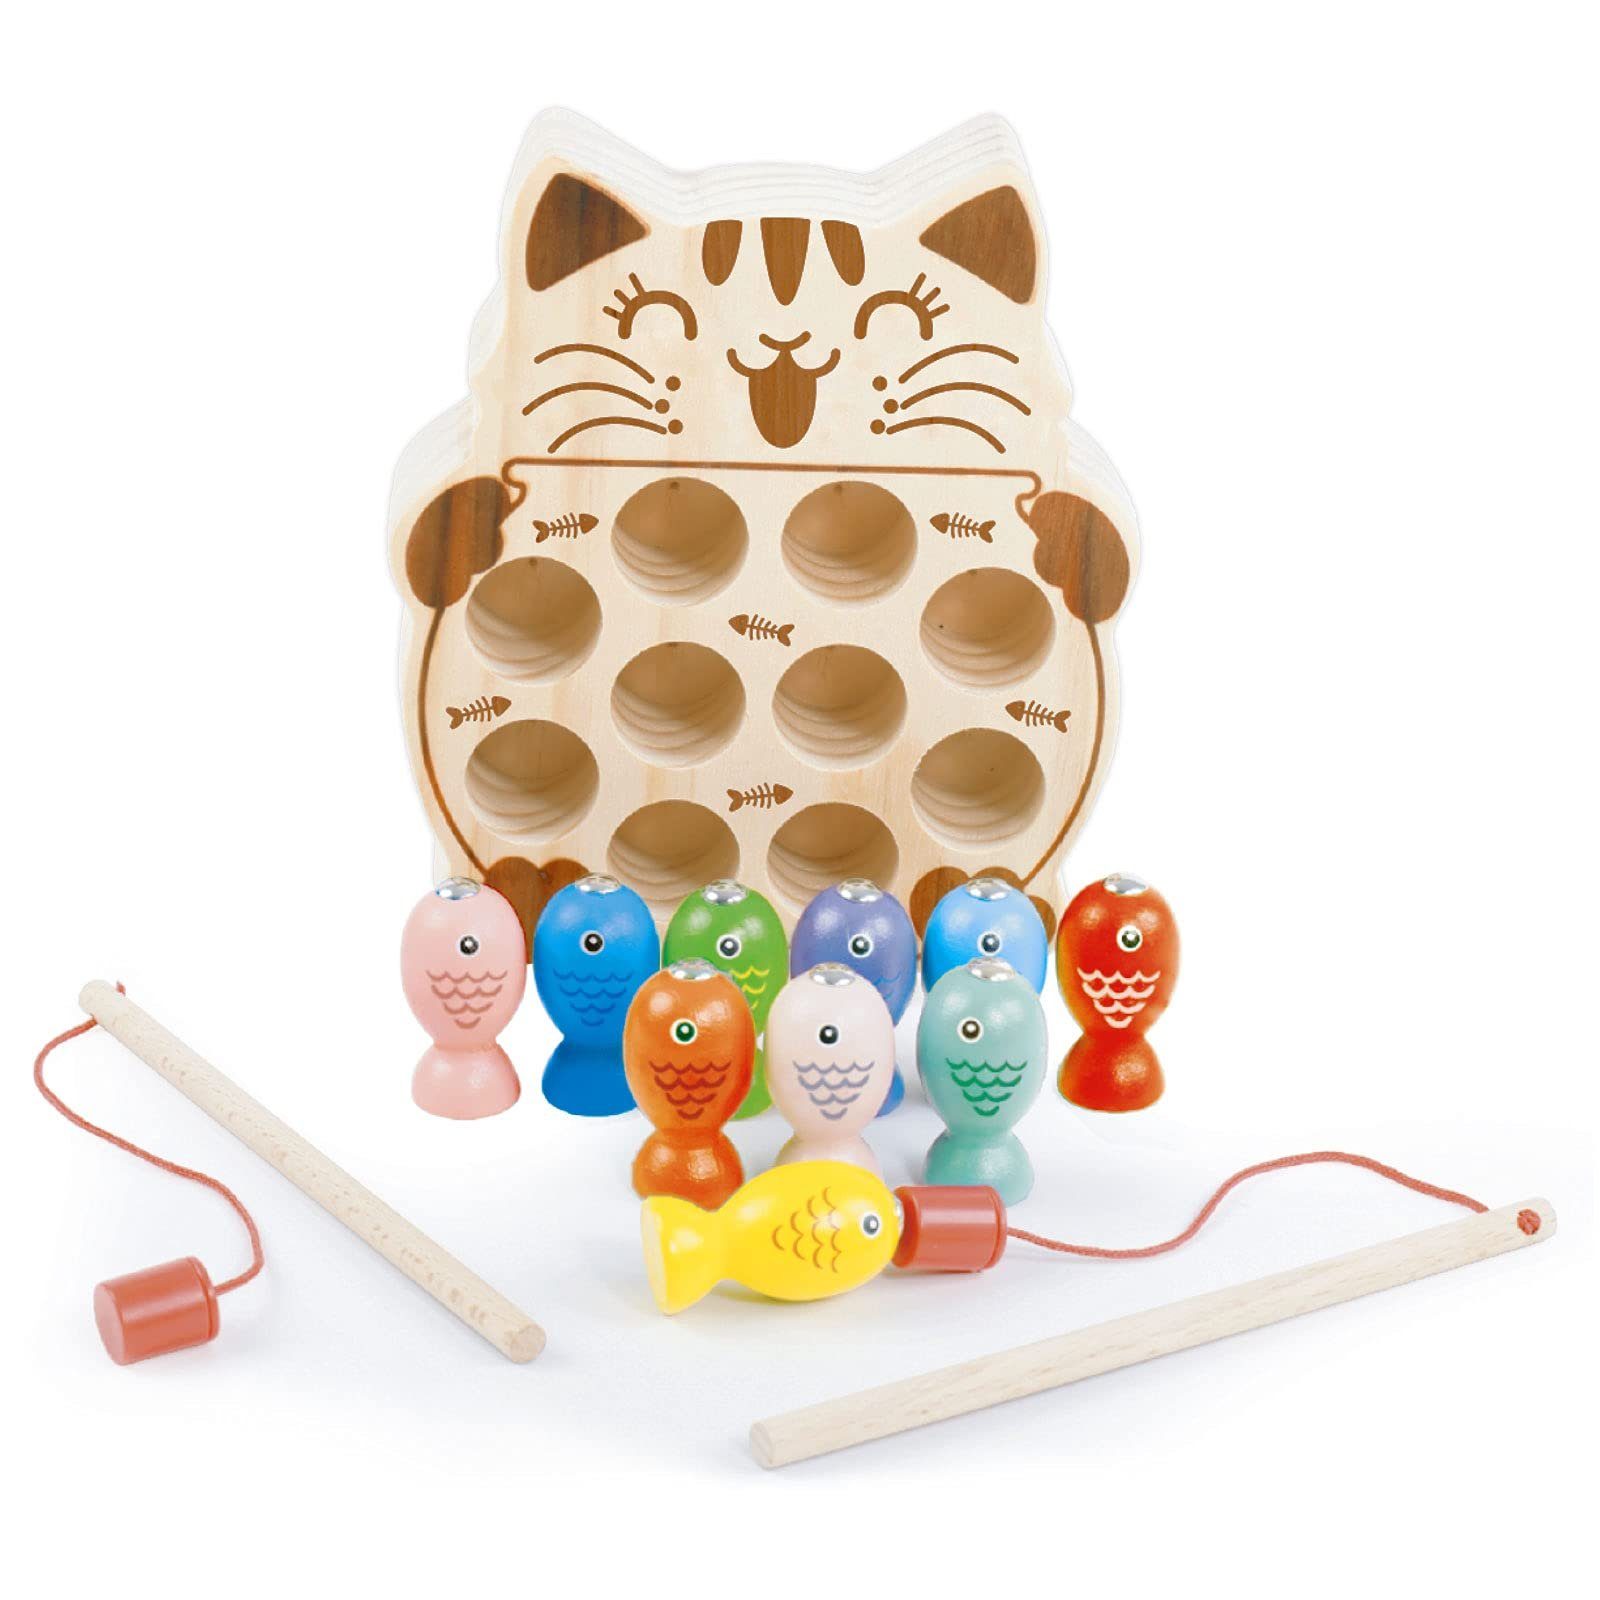 DIY Mosaik Spielzeug Steckpuzzle Lernspielzeug Geburtstag Geschenk für Kinder 